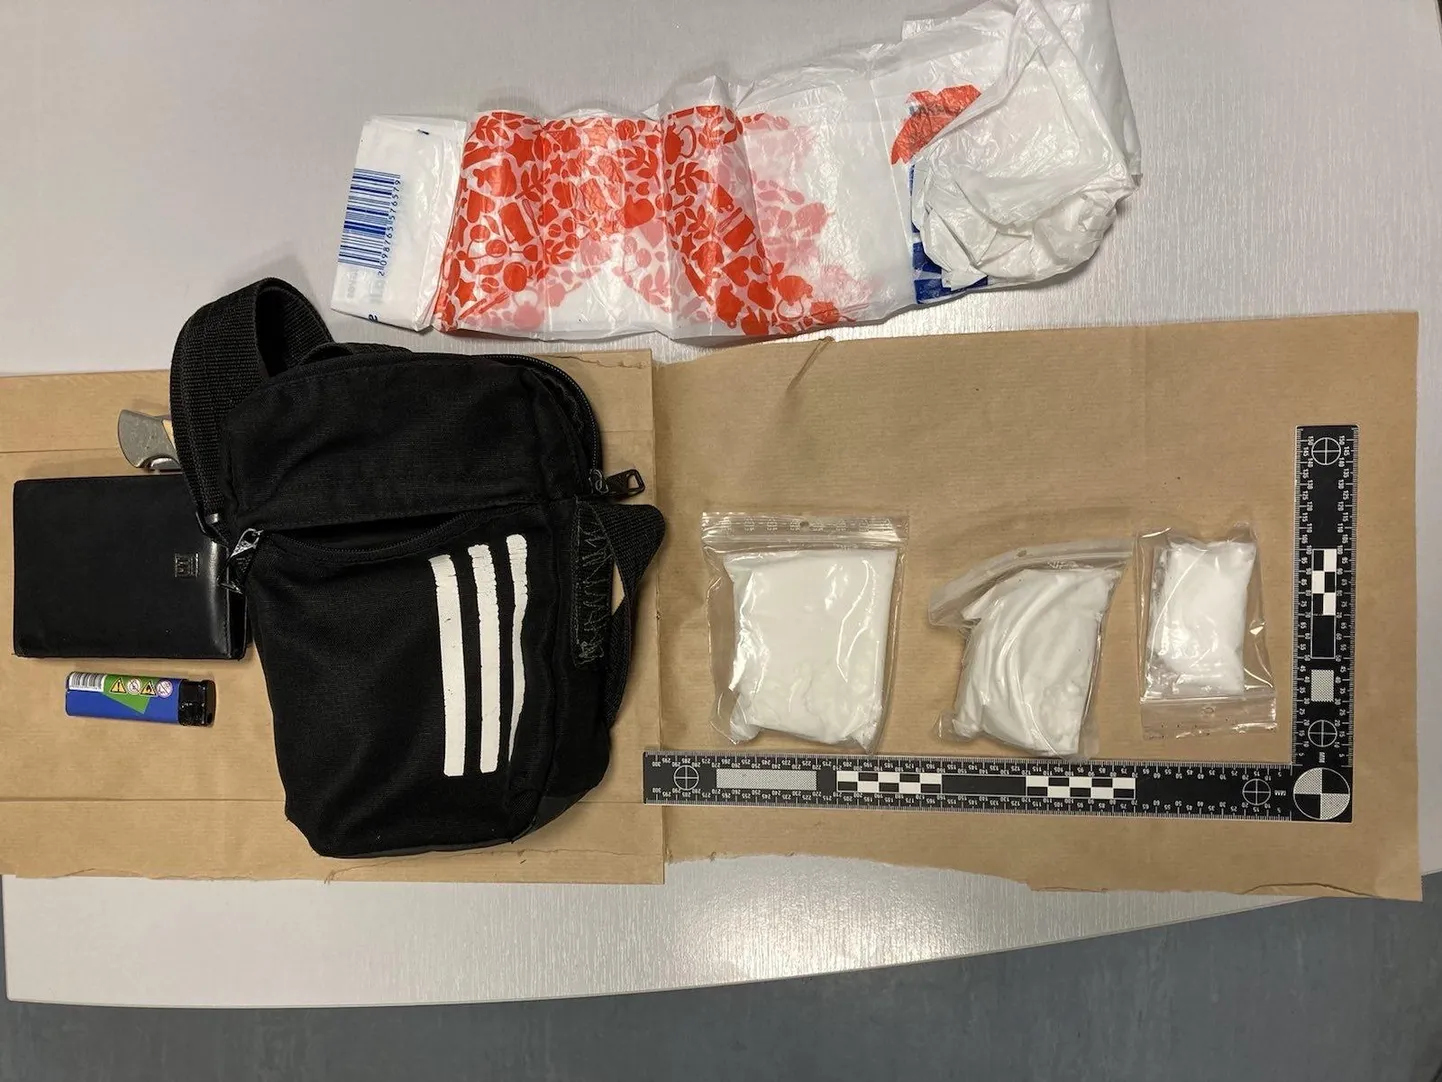 Полиция обнаружила у задержанных 240 граммов амфетамина, который, по всей видимости, предназначался для распространения в Вирумаа.